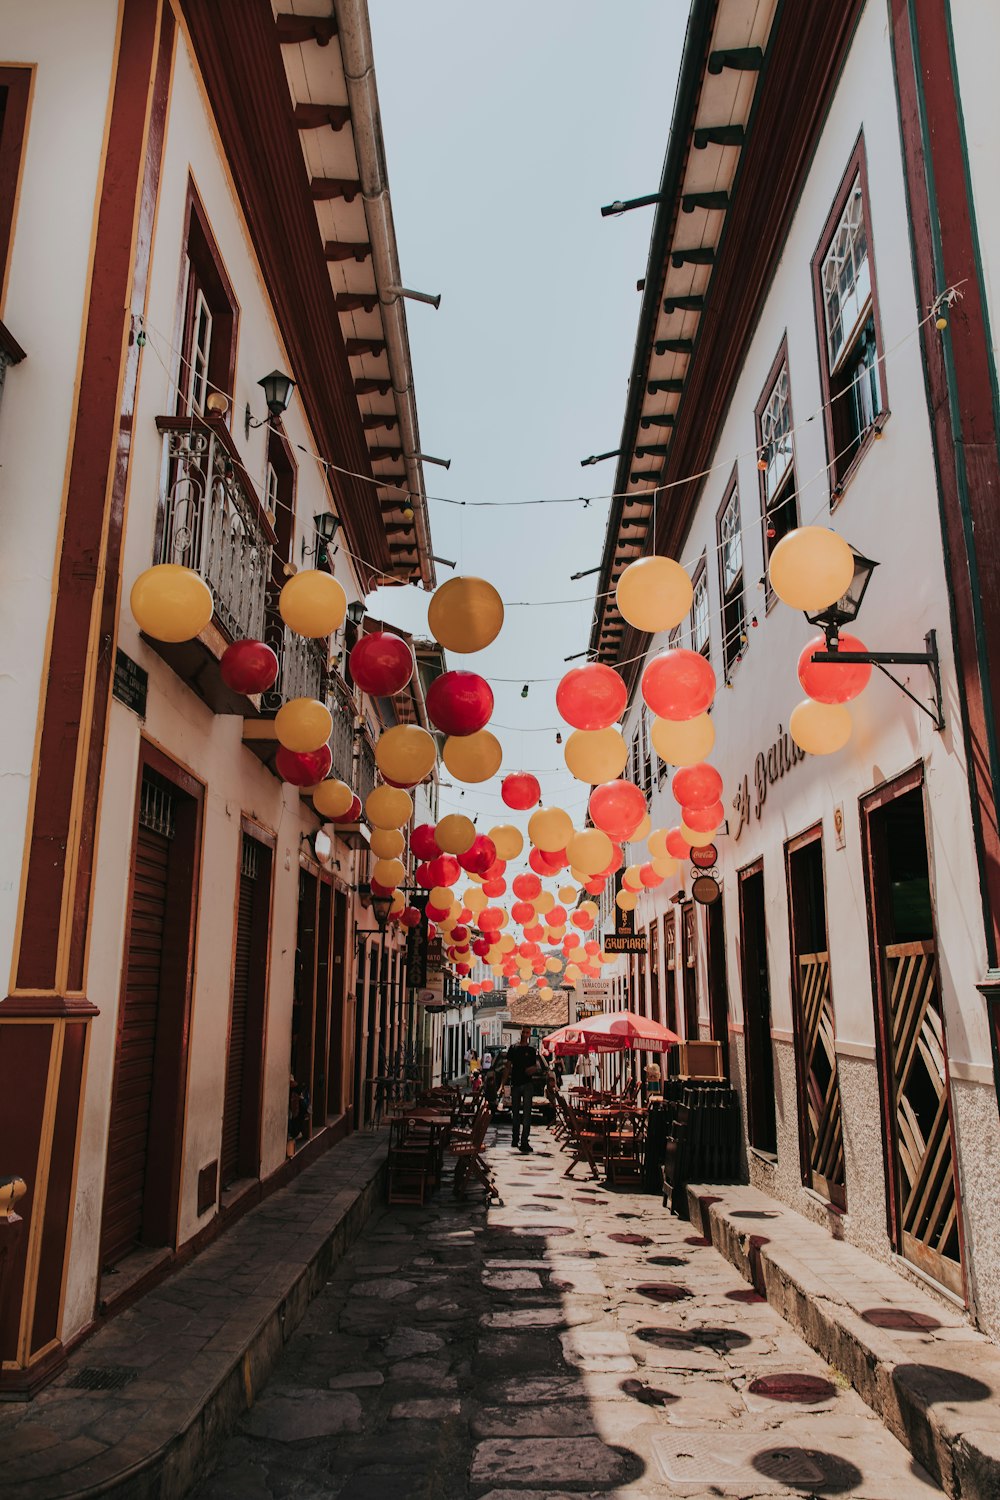 Une rue bordée de nombreuses lanternes rouges et jaunes